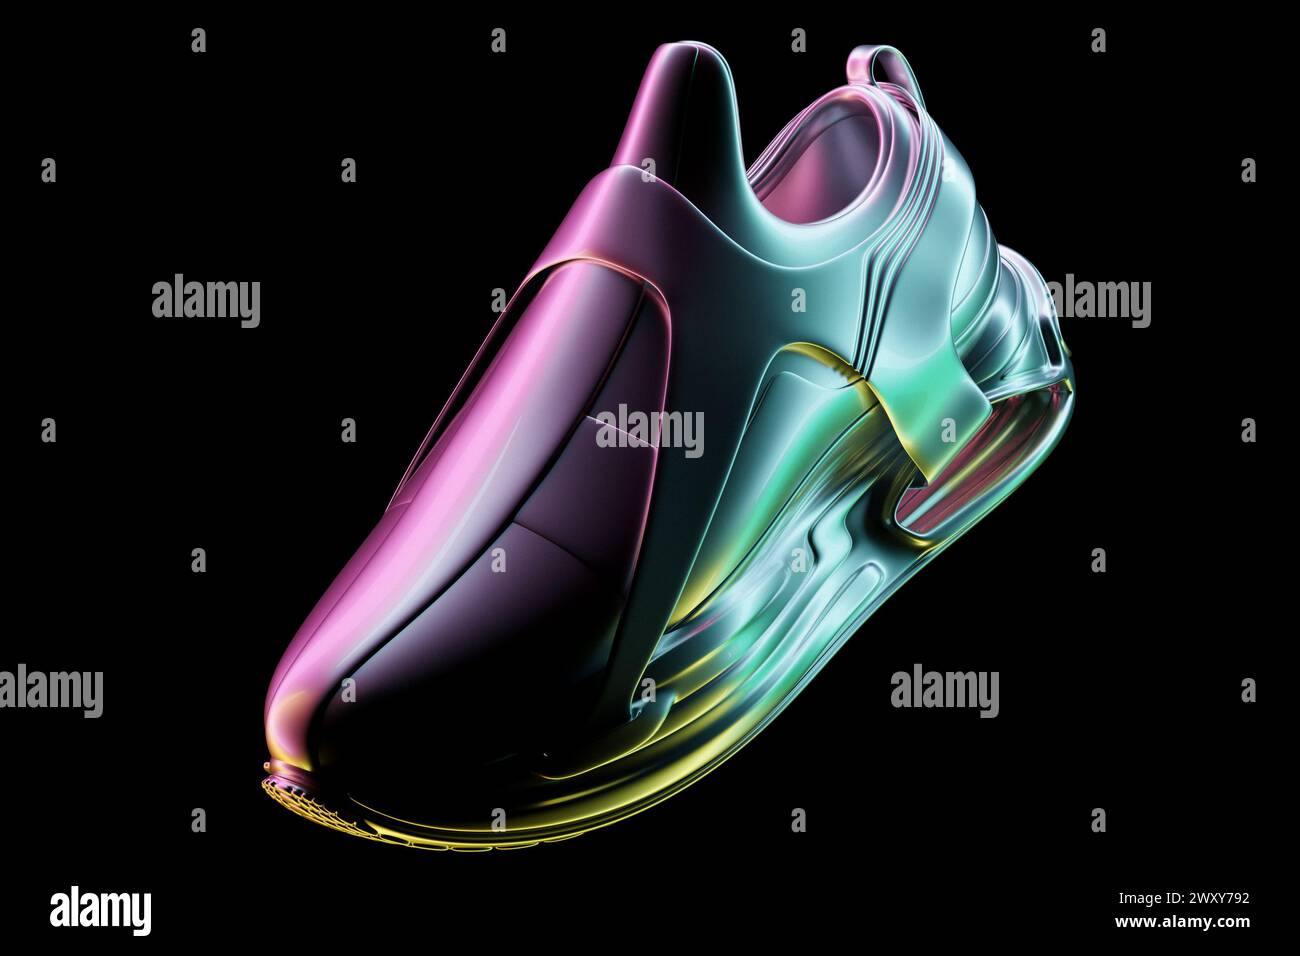 ilustración 3d de zapatillas de deporte de colores con suelas de espuma y cierre bajo color neón sobre un fondo negro. Zapatillas con vista lateral. Zapatillas de moda. Foto de stock